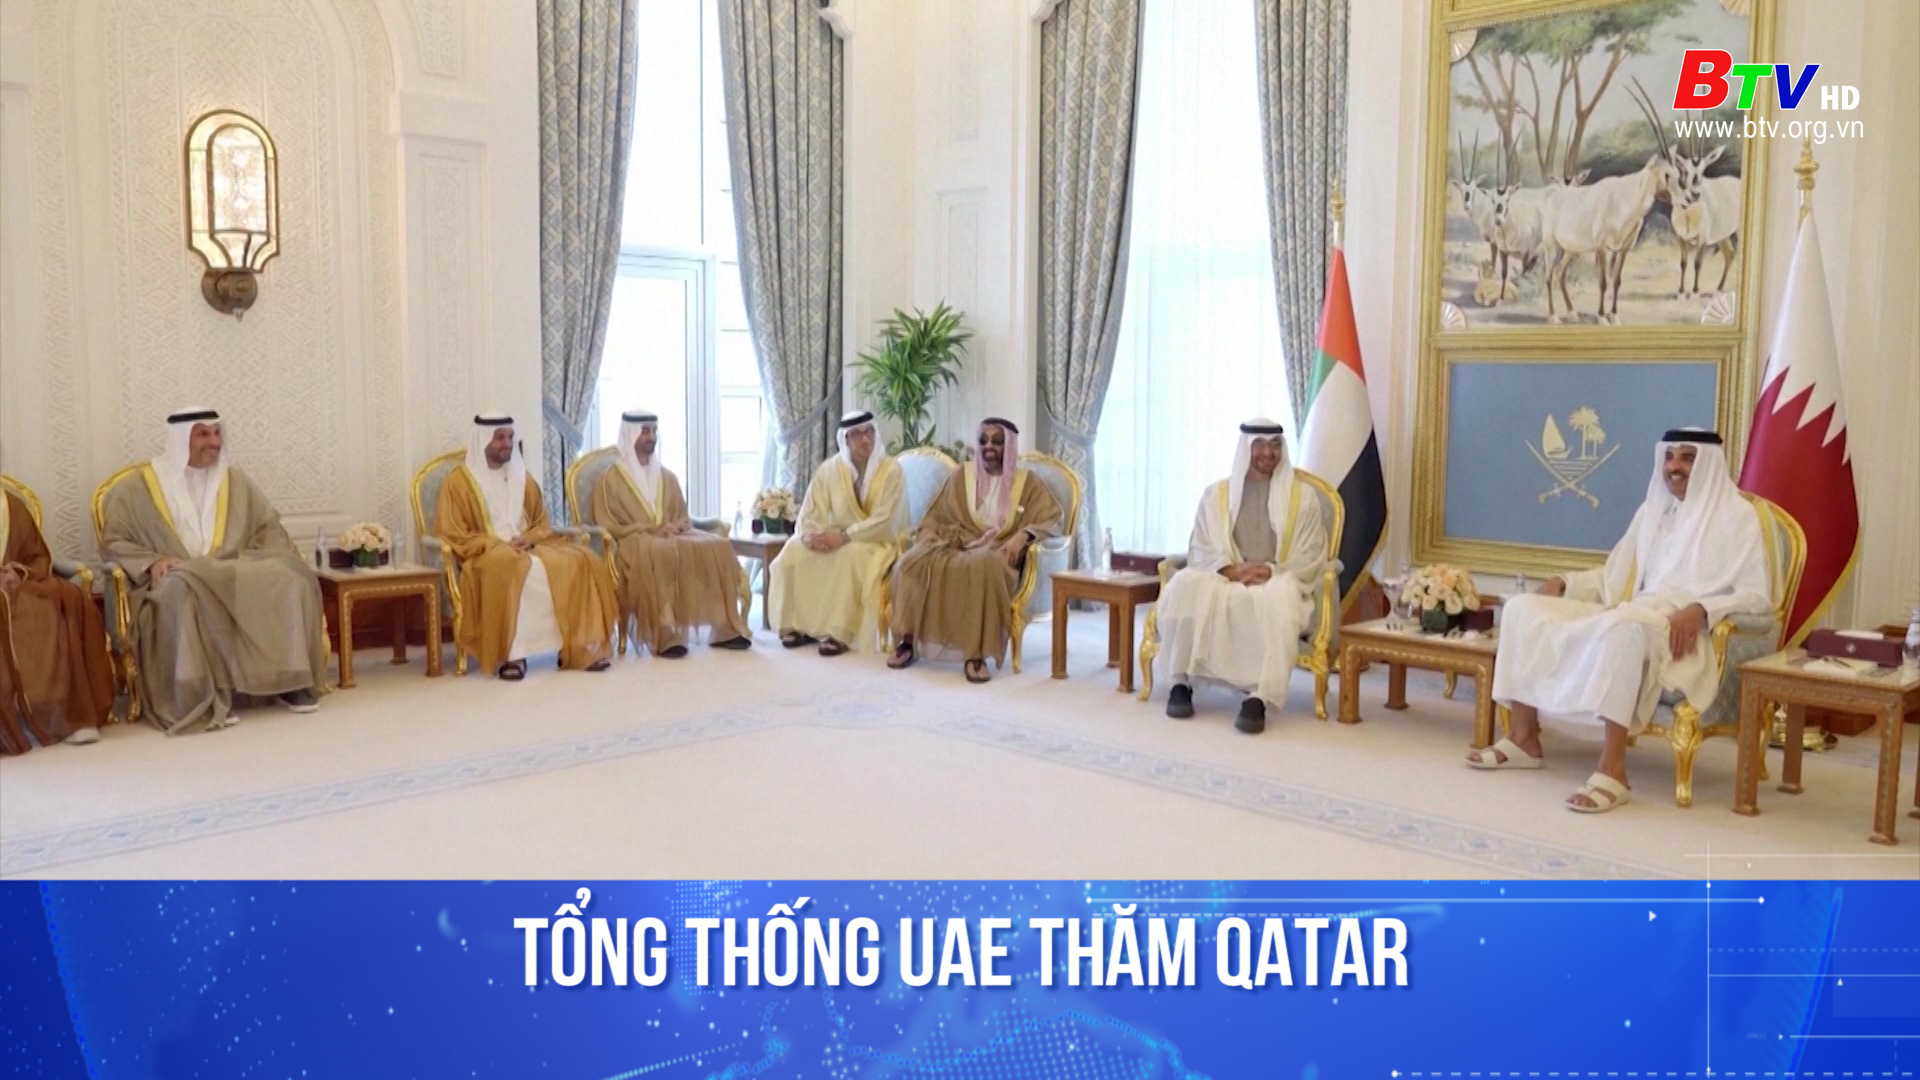 Tổng thống UAE thăm Qatar